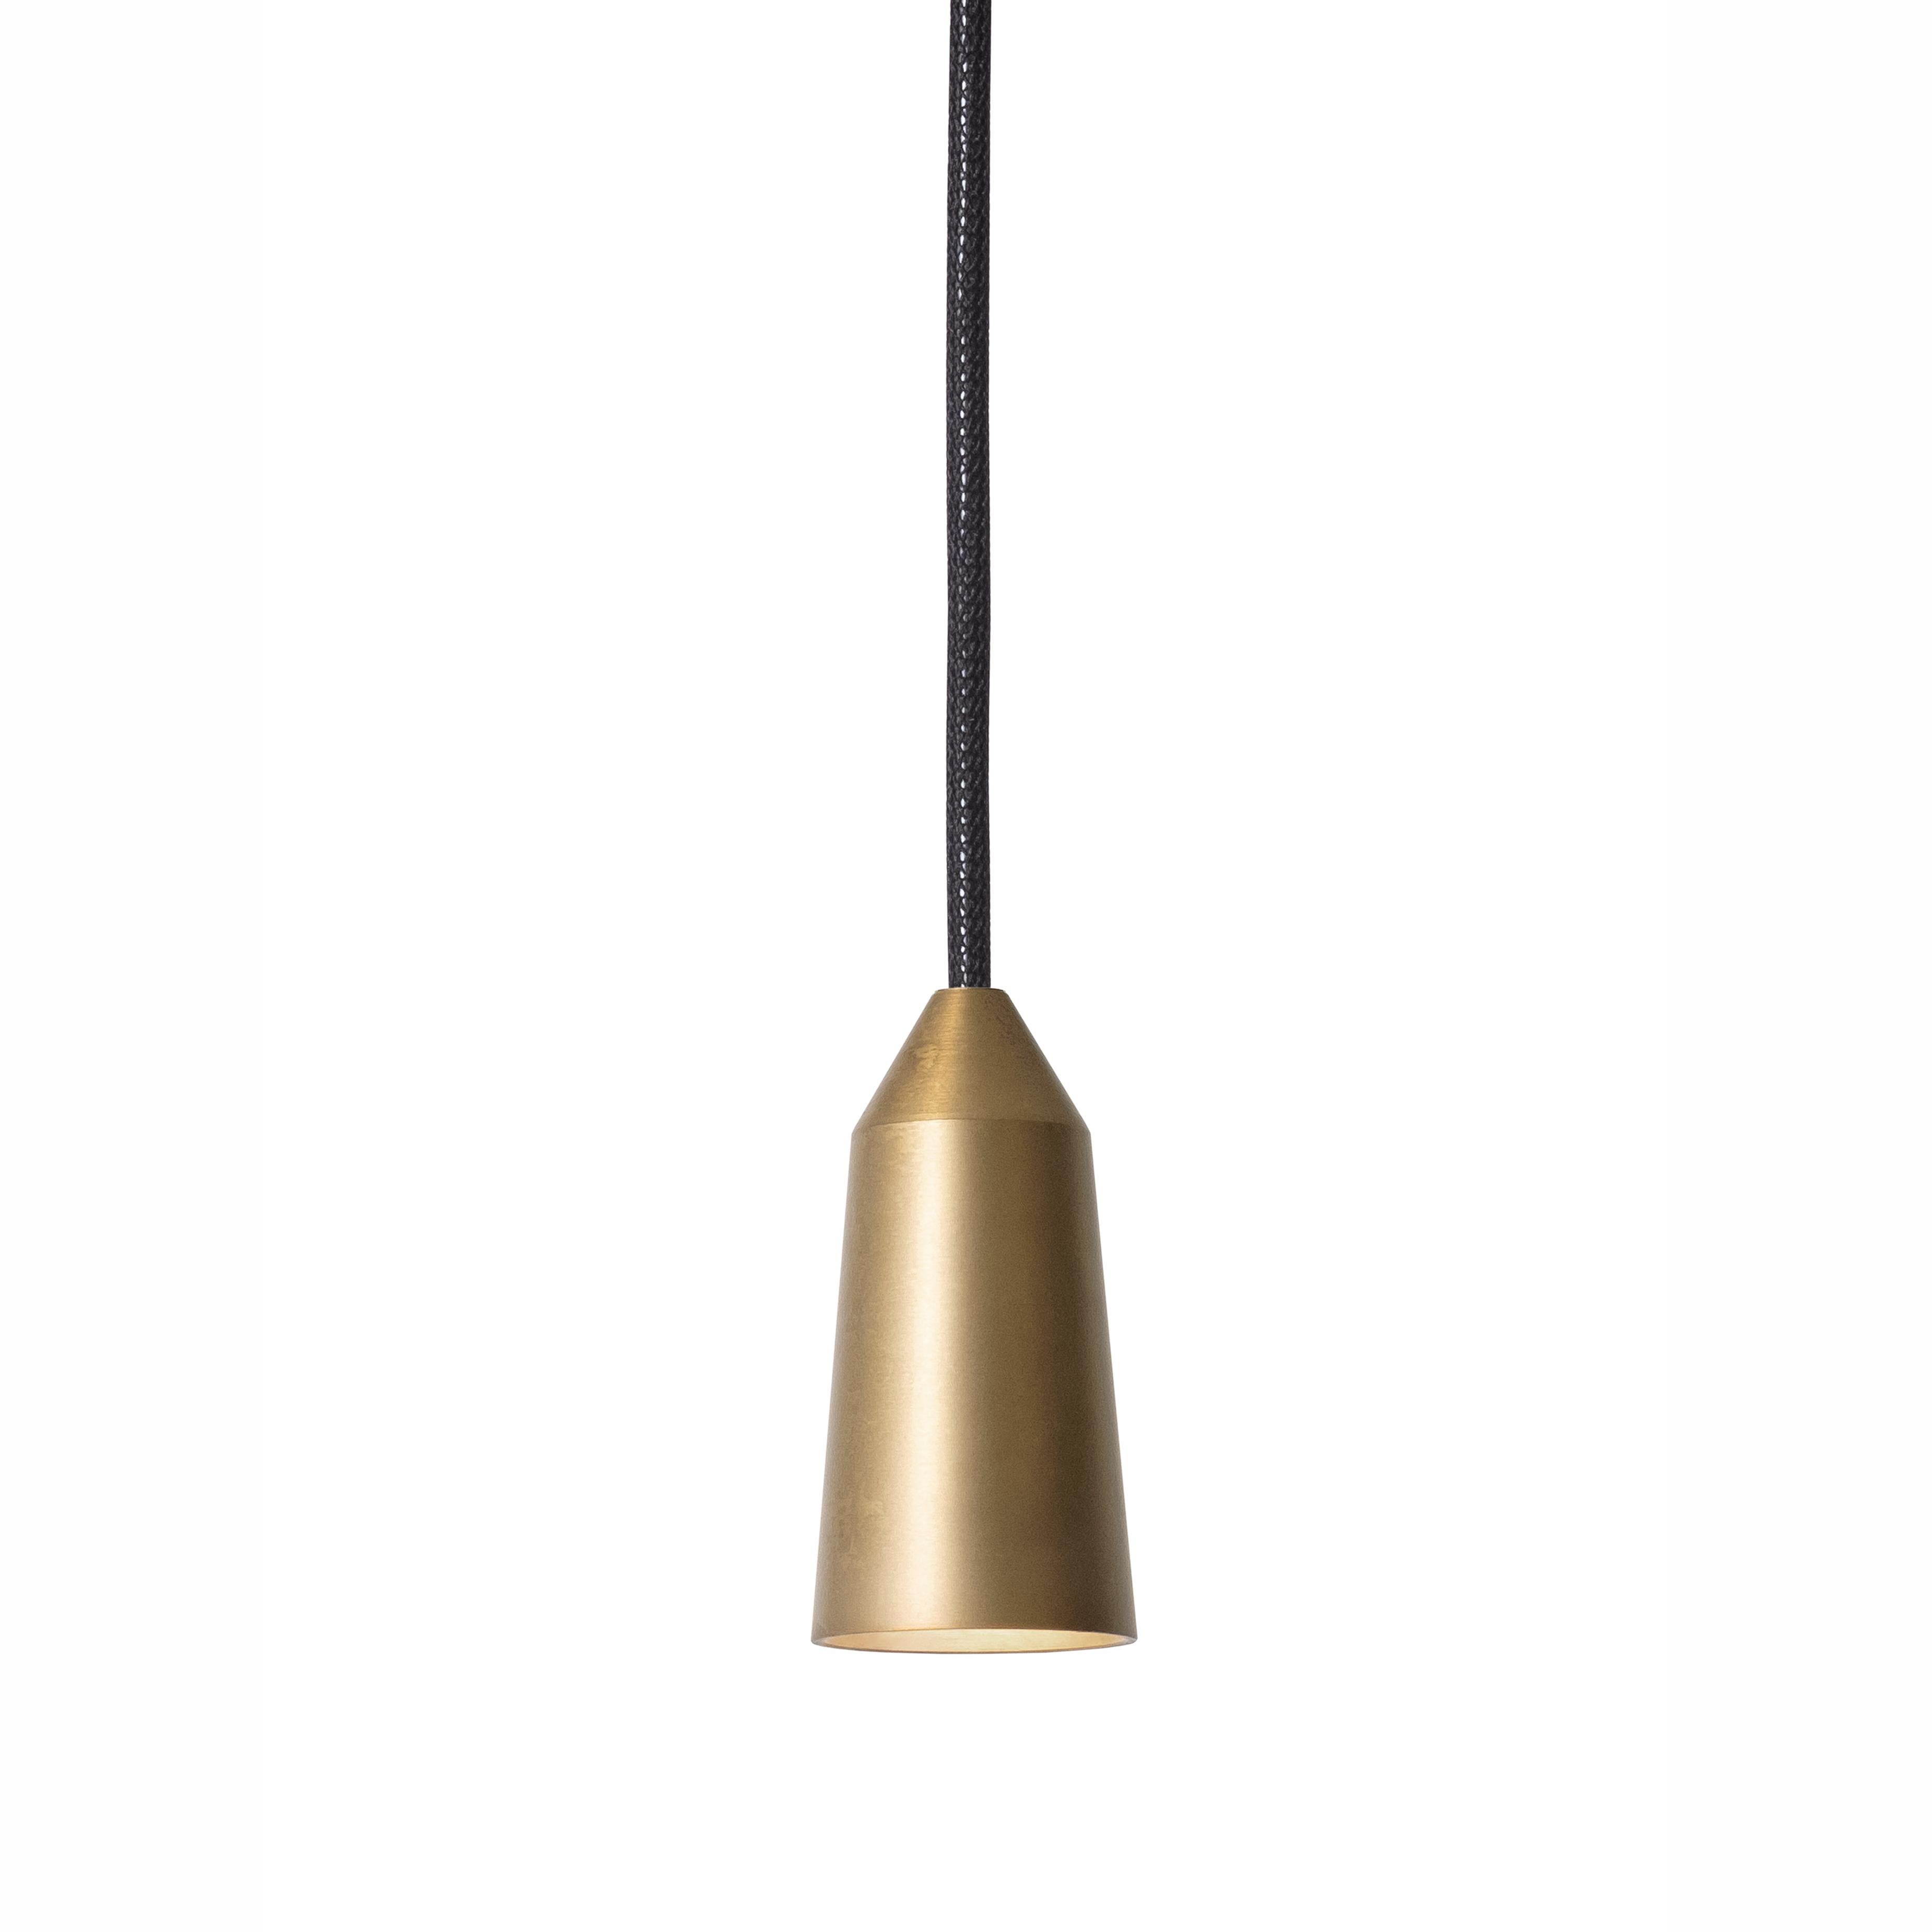 Scandinavian Modern Henrik Tengler 3492-6 Massiv Lamp by Konsthantverk For Sale